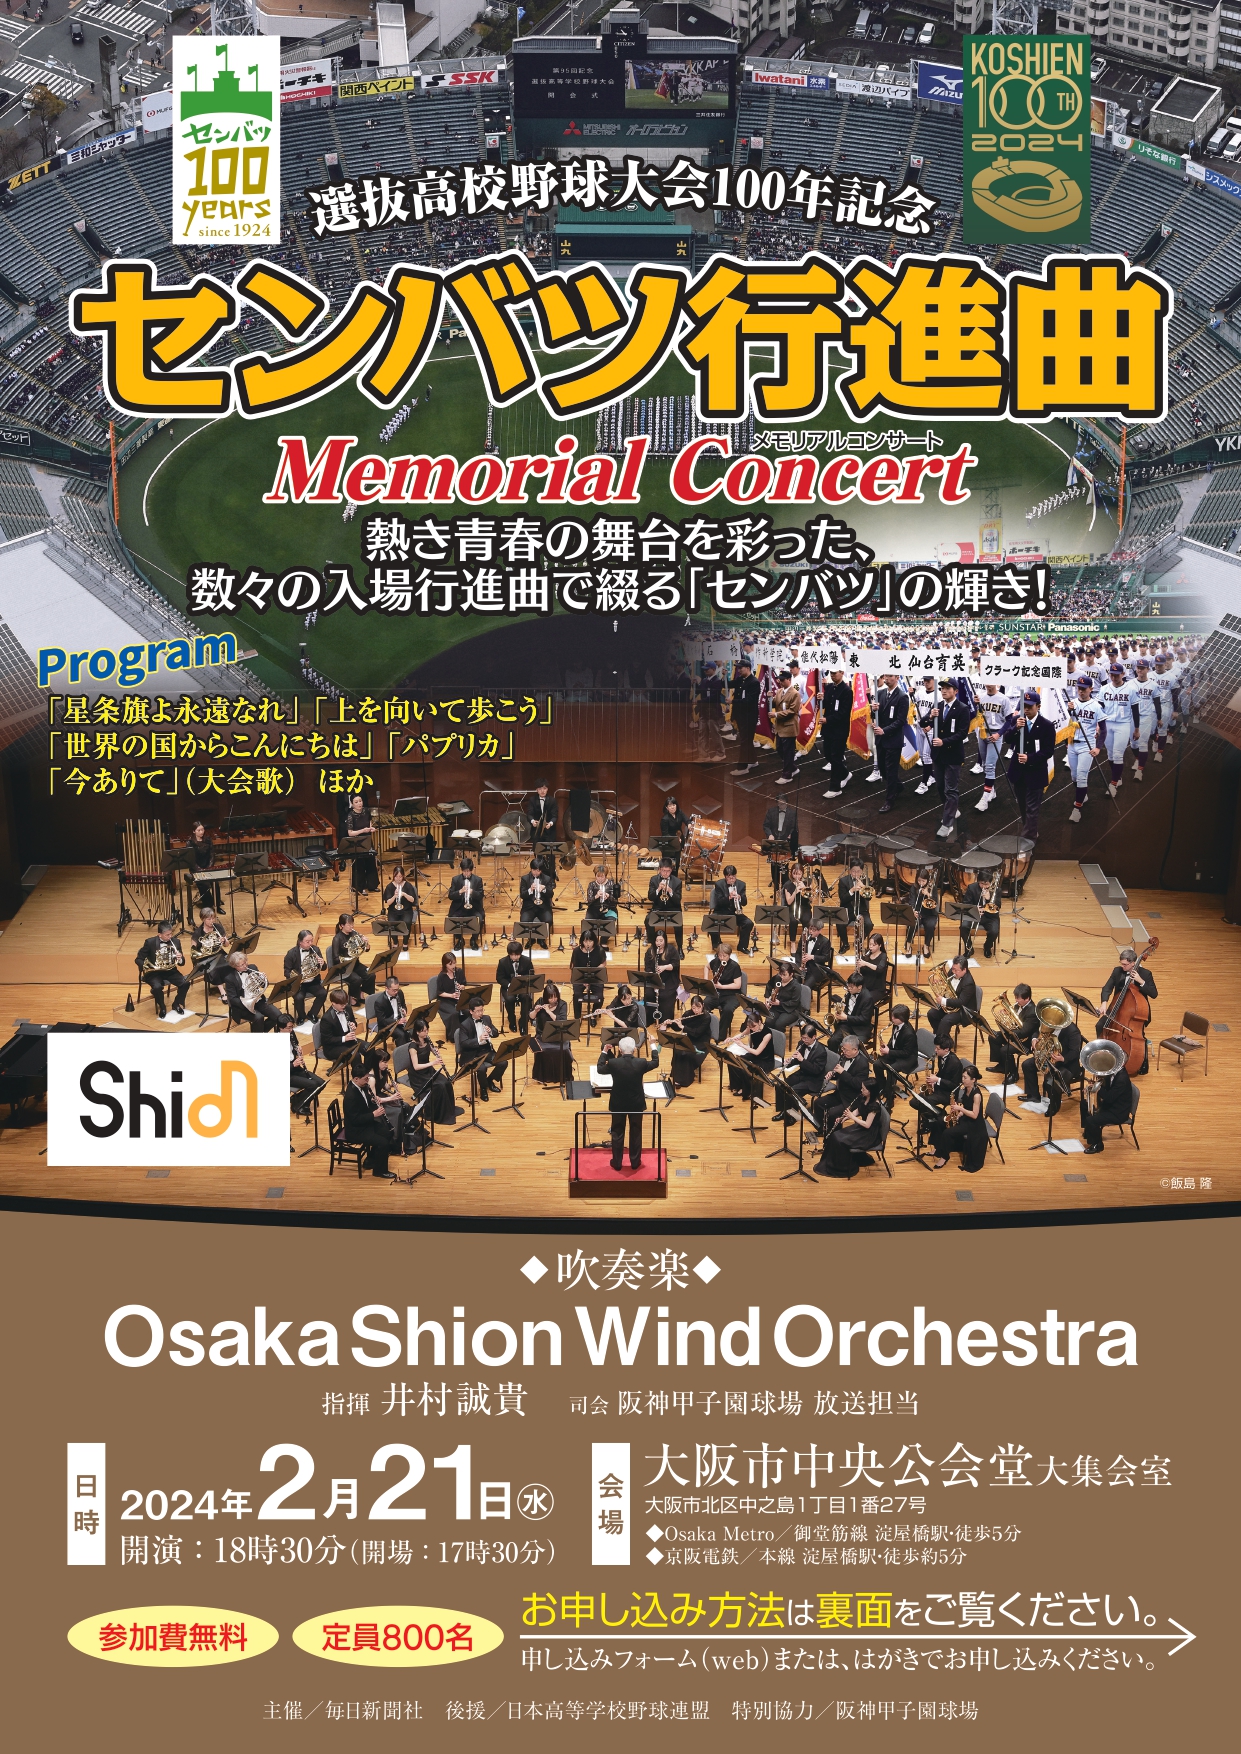 800名様を無料ご招待‼️Osaka Shion Wind Orchestraが贈る「センバツ行進曲 Memorial Concert」 |  NEWSCAST